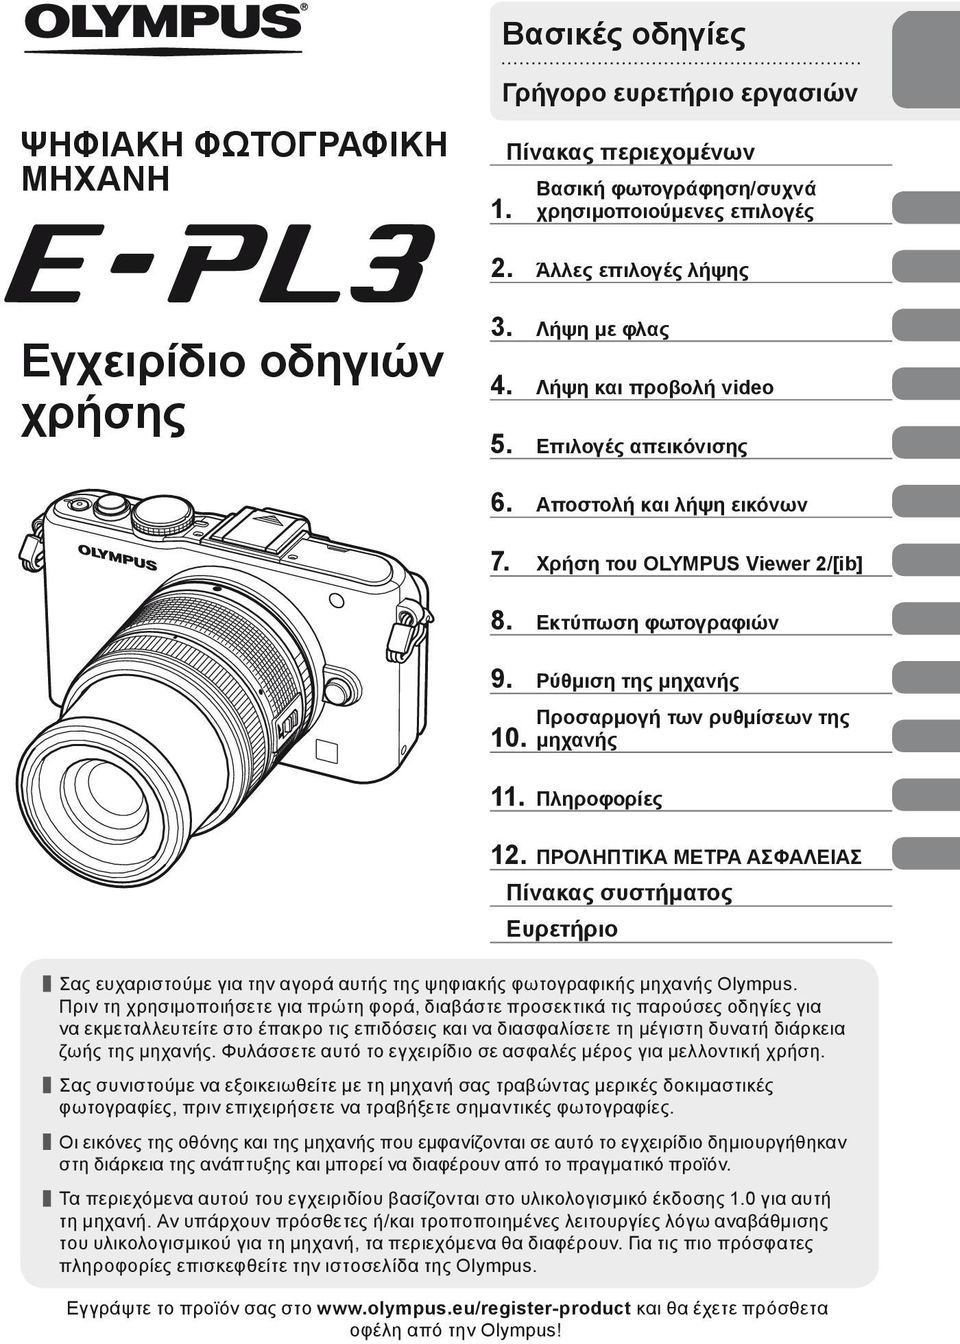 Προσαρμογή των ρυθμίσεων της μηχανής 11. Πληροφορίες 12. ΠΡΟΛΗΠΤΙΚΑ ΜΕΤΡΑ ΑΣΦΑΛΕΙΑΣ Πίνακας συστήματος Ευρετήριο Σας ευχαριστούμε για την αγορά αυτής της ψηφιακής φωτογραφικής μηχανής Olympus.